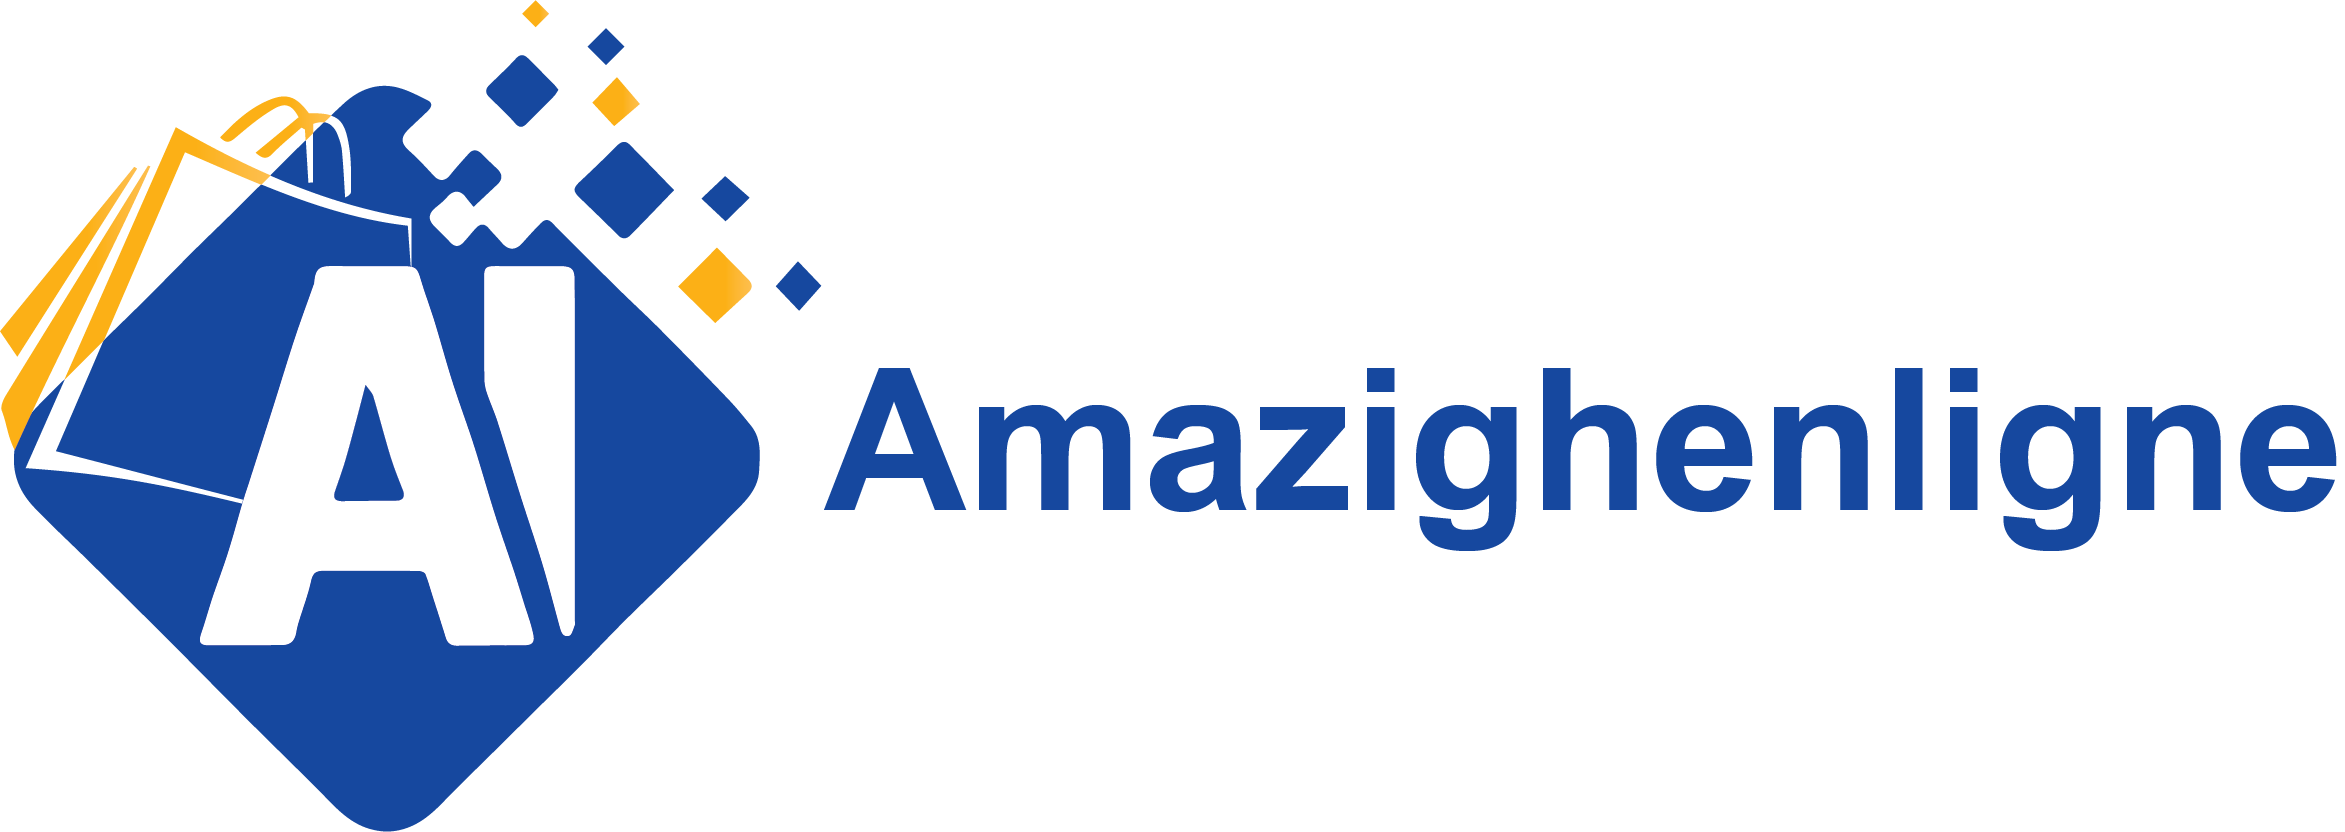 Amazighgroupe